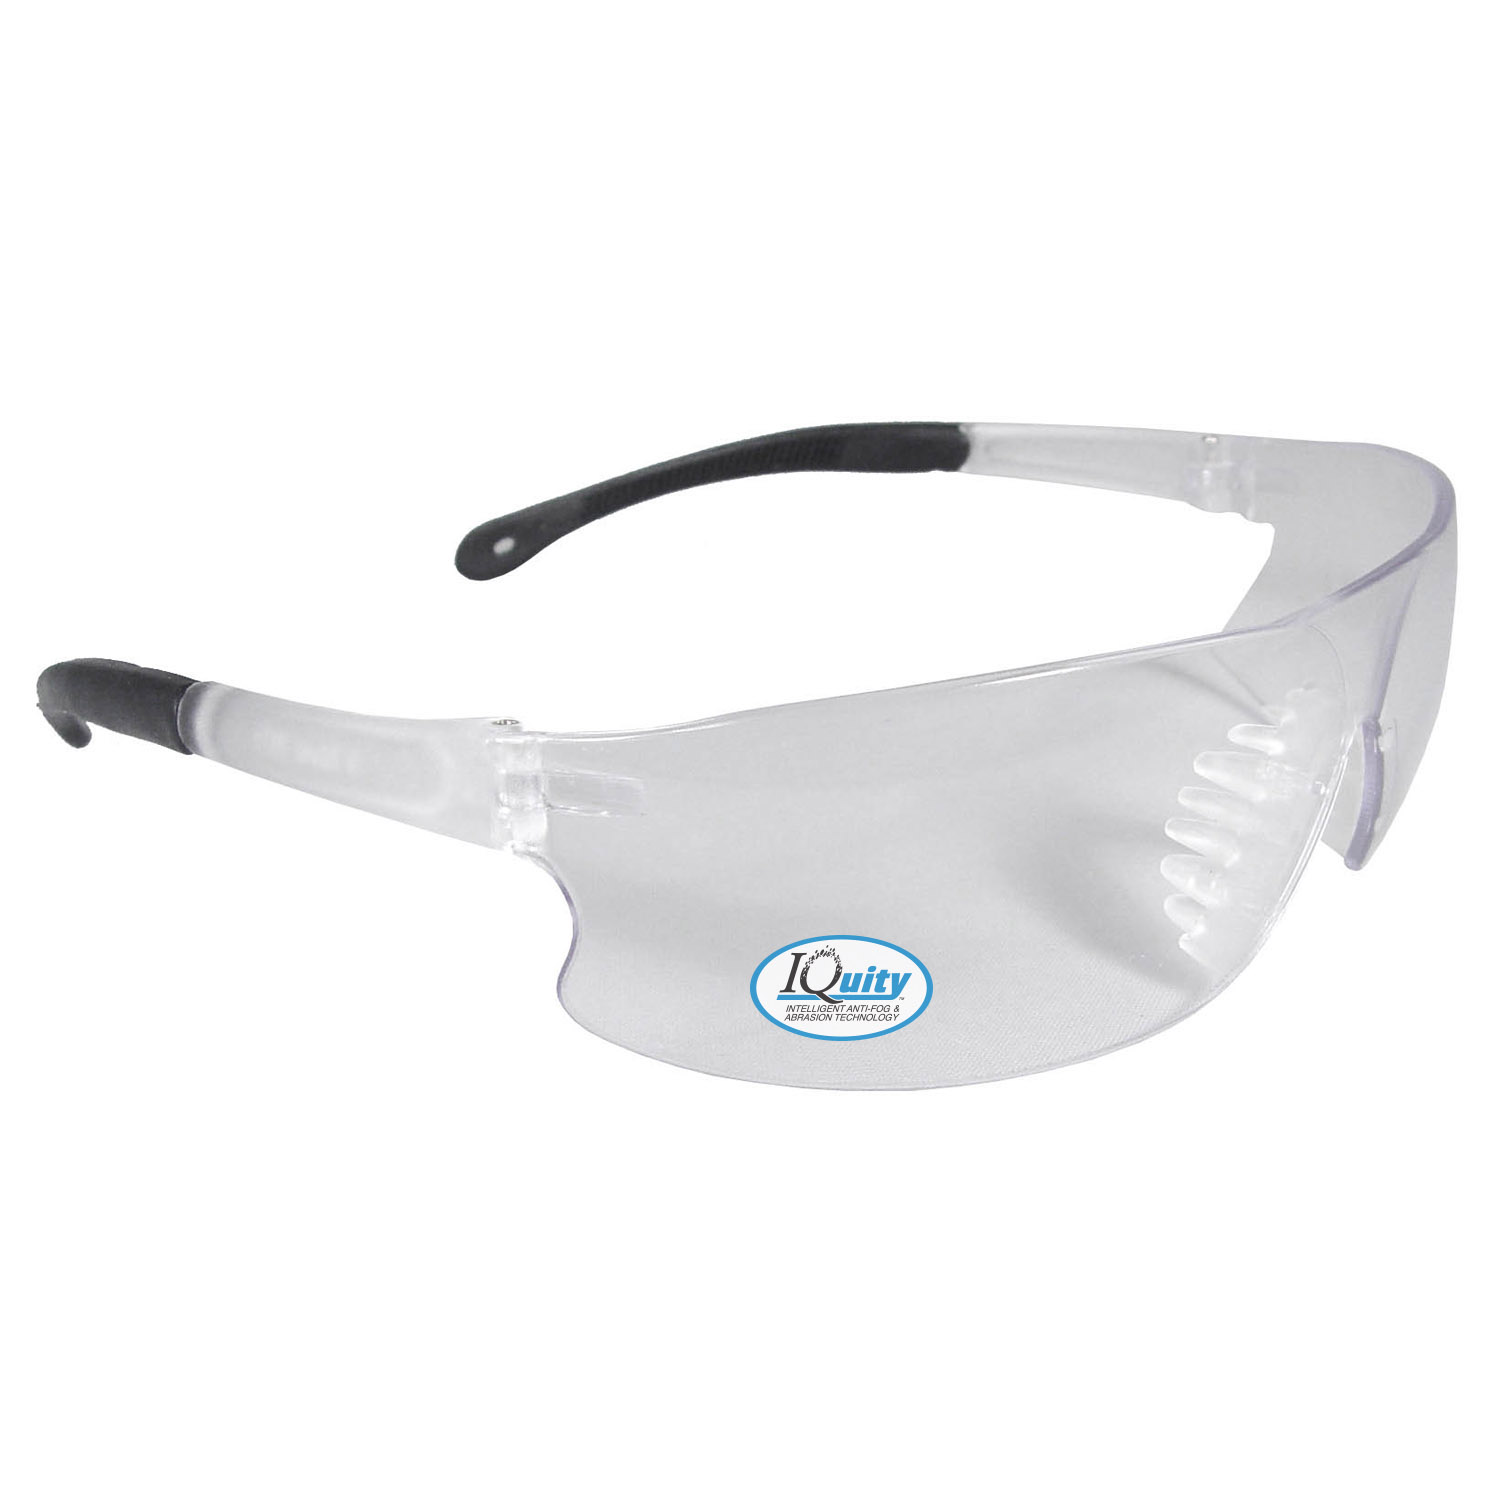 Rad-Sequel™ IQ - IQUITY™ Anti-Fog Safety Eyewear - Clear Frame - Clear IQ Anti-Fog Lens - Anti-Fog Lens